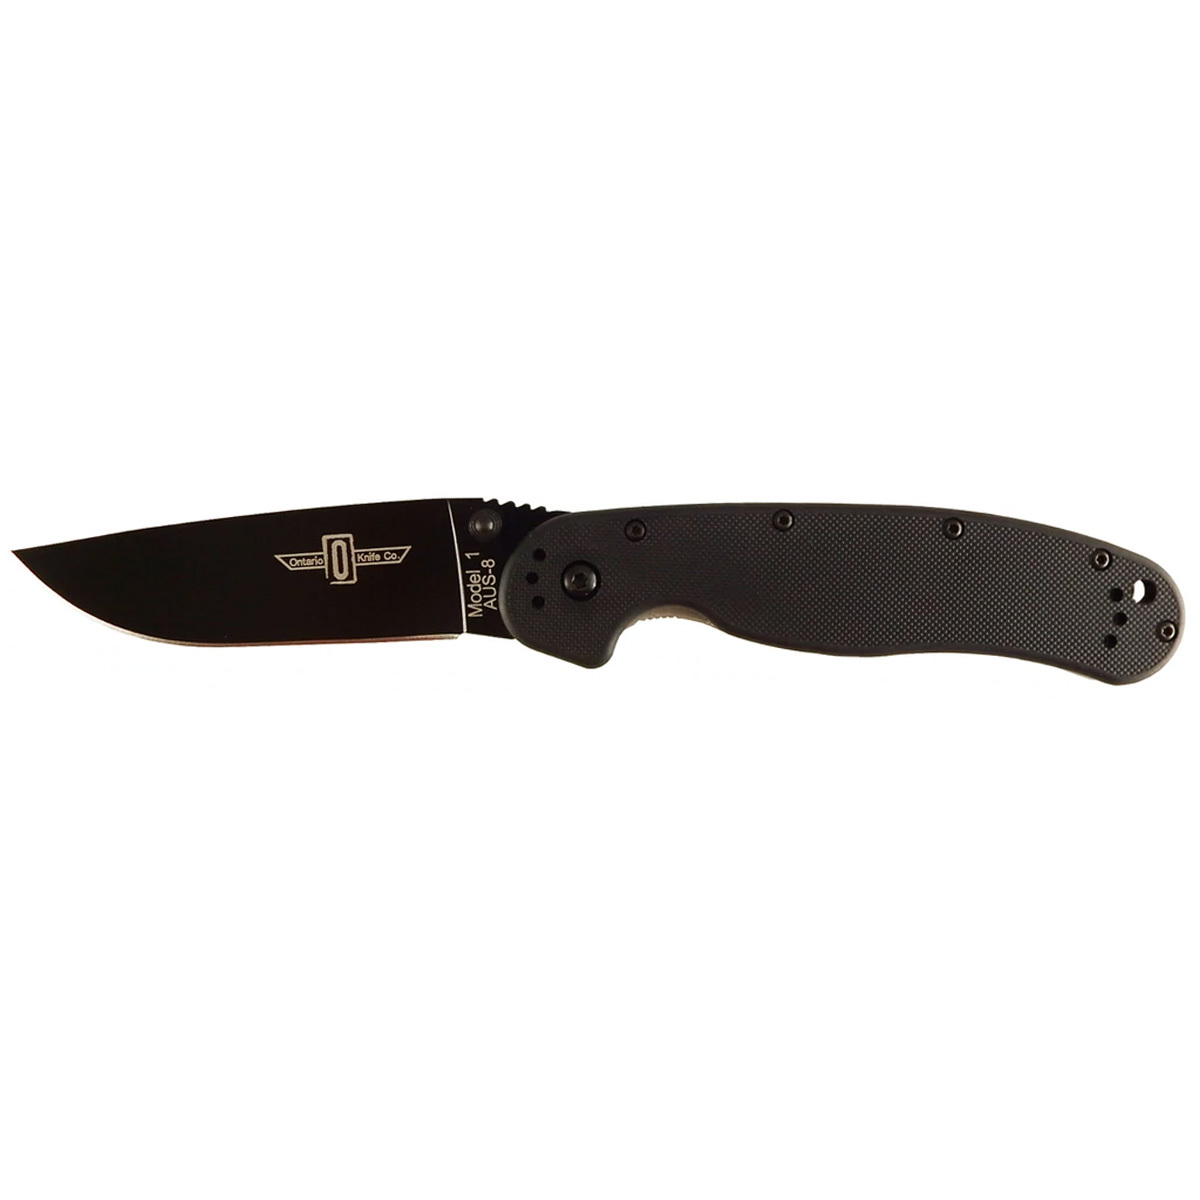 Нож Ontario 8846 RAT 1 Black полуавтоматический складной нож ontario utilitac assisted клинок satin рукоять black g 10